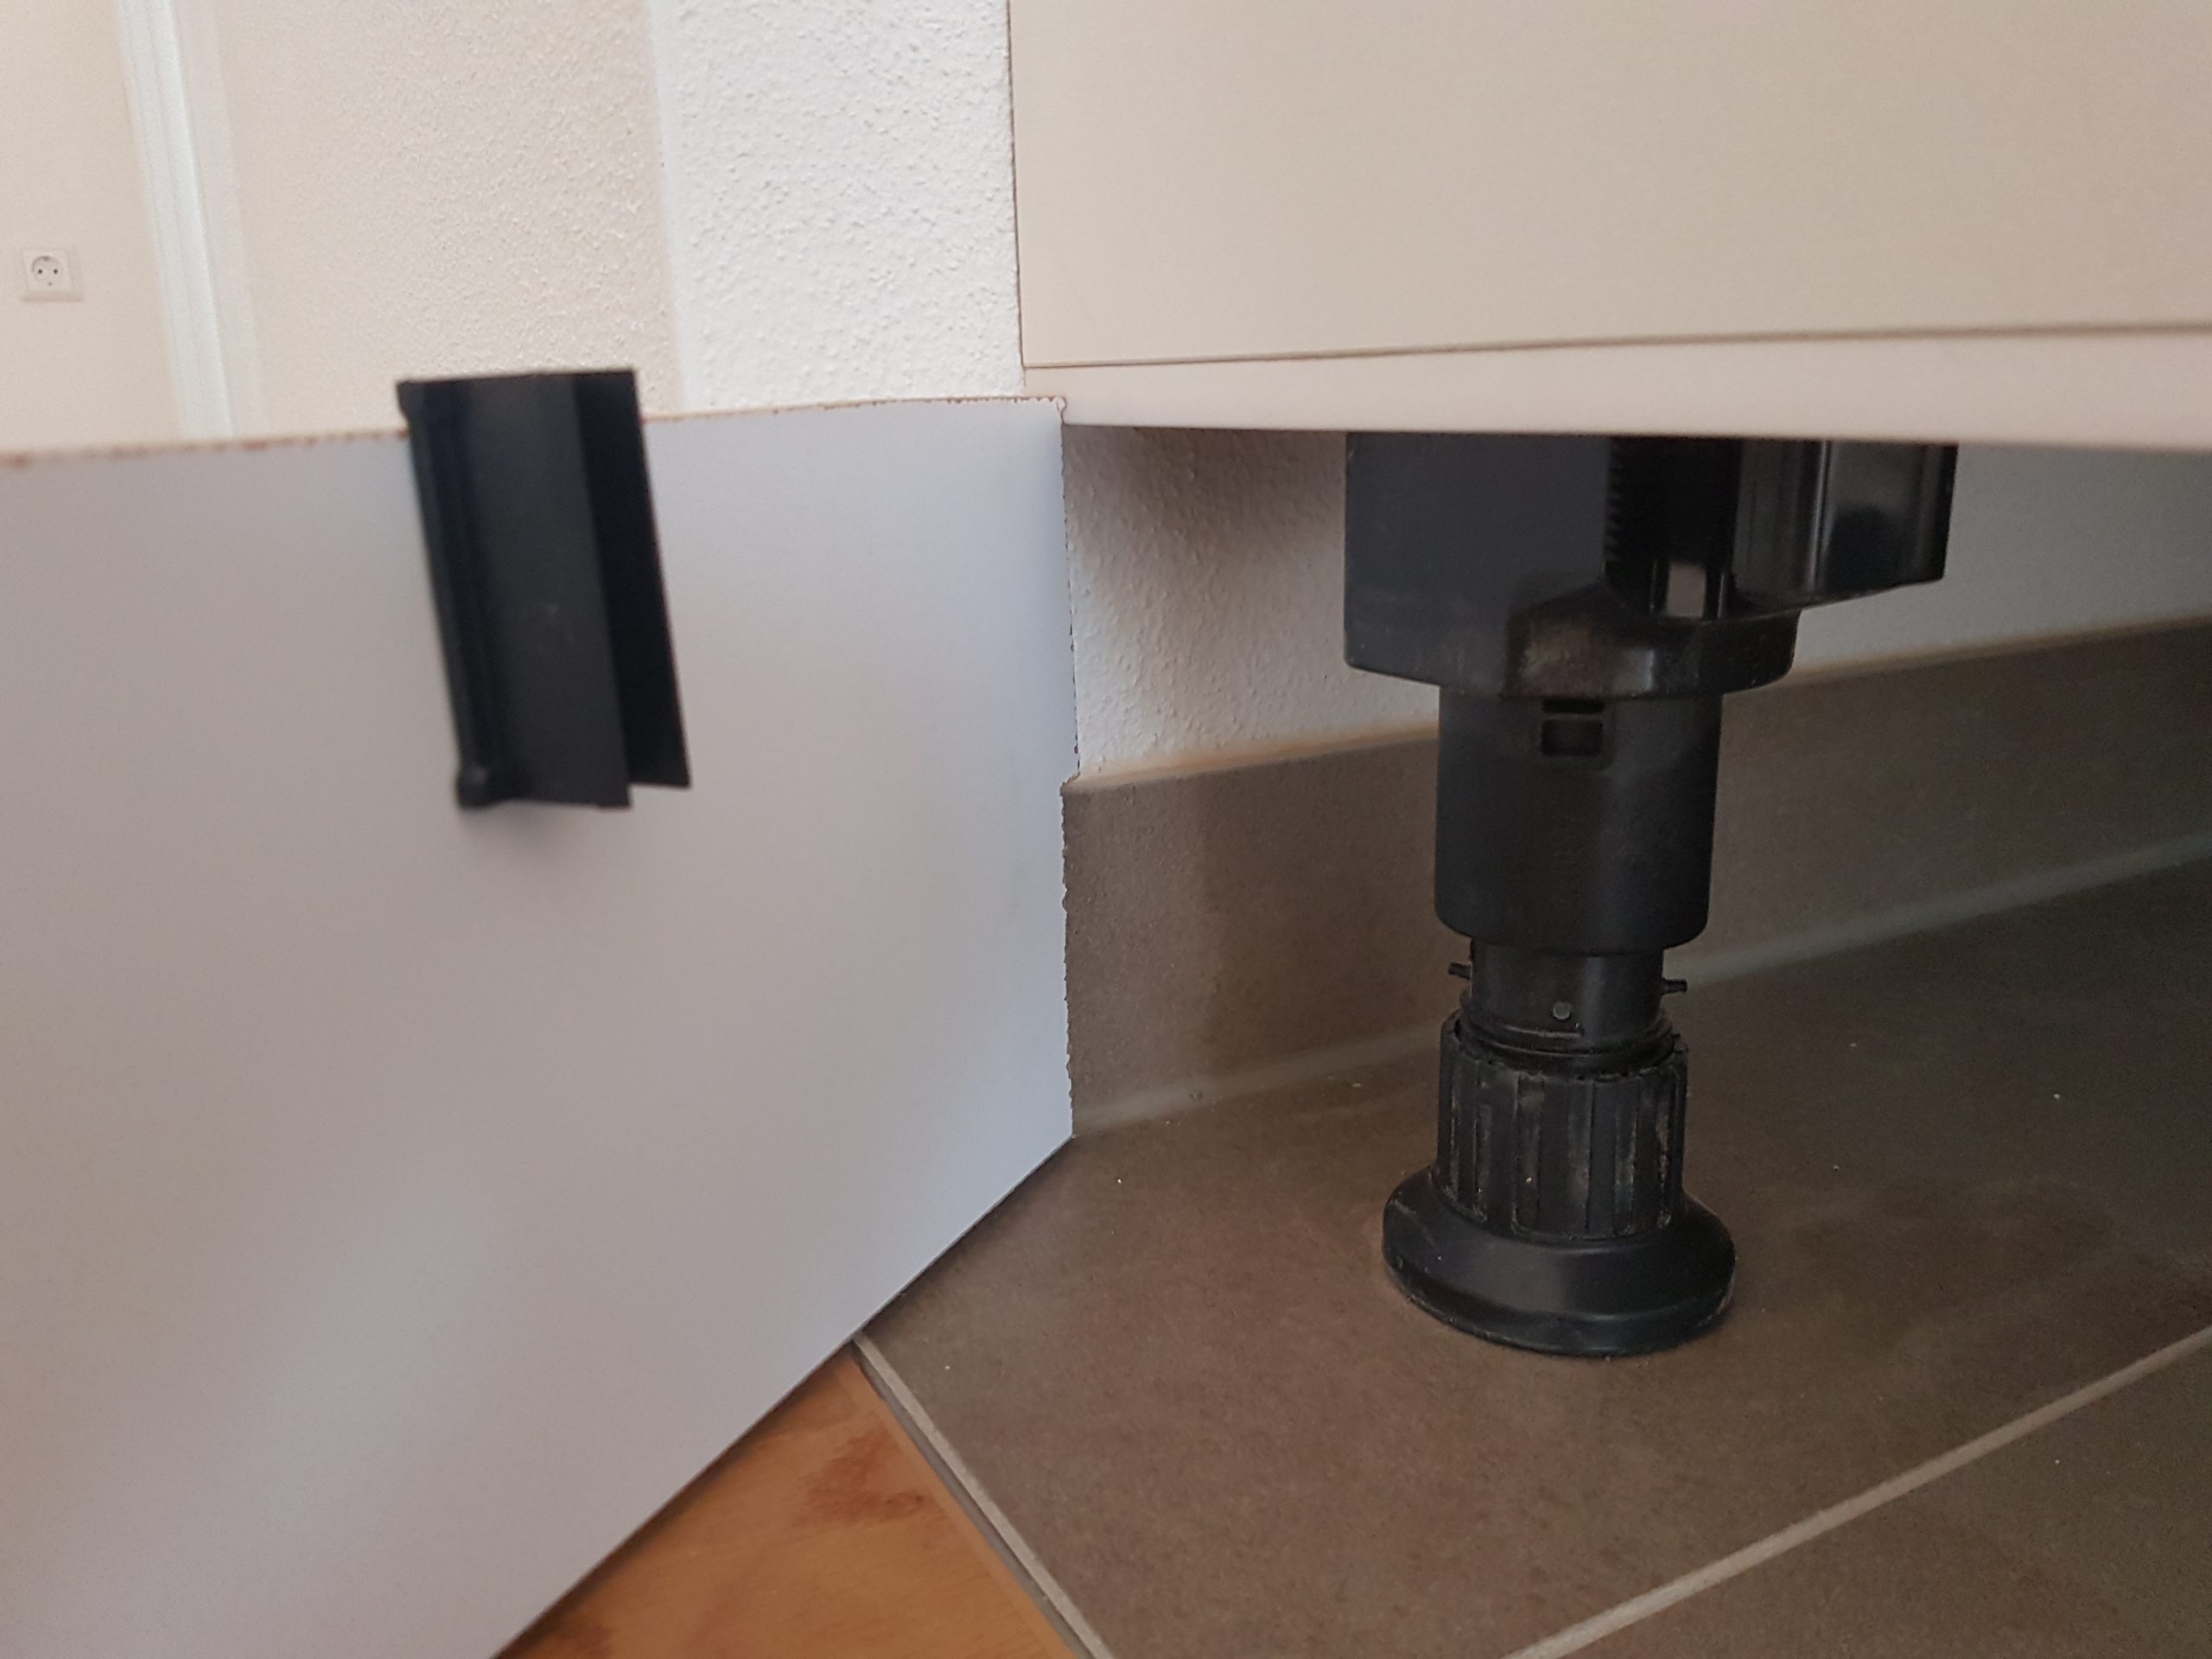 6 x Küchensockel Befestigung Küche Sockel  Klipps Clipse Sockelhalter Halter 